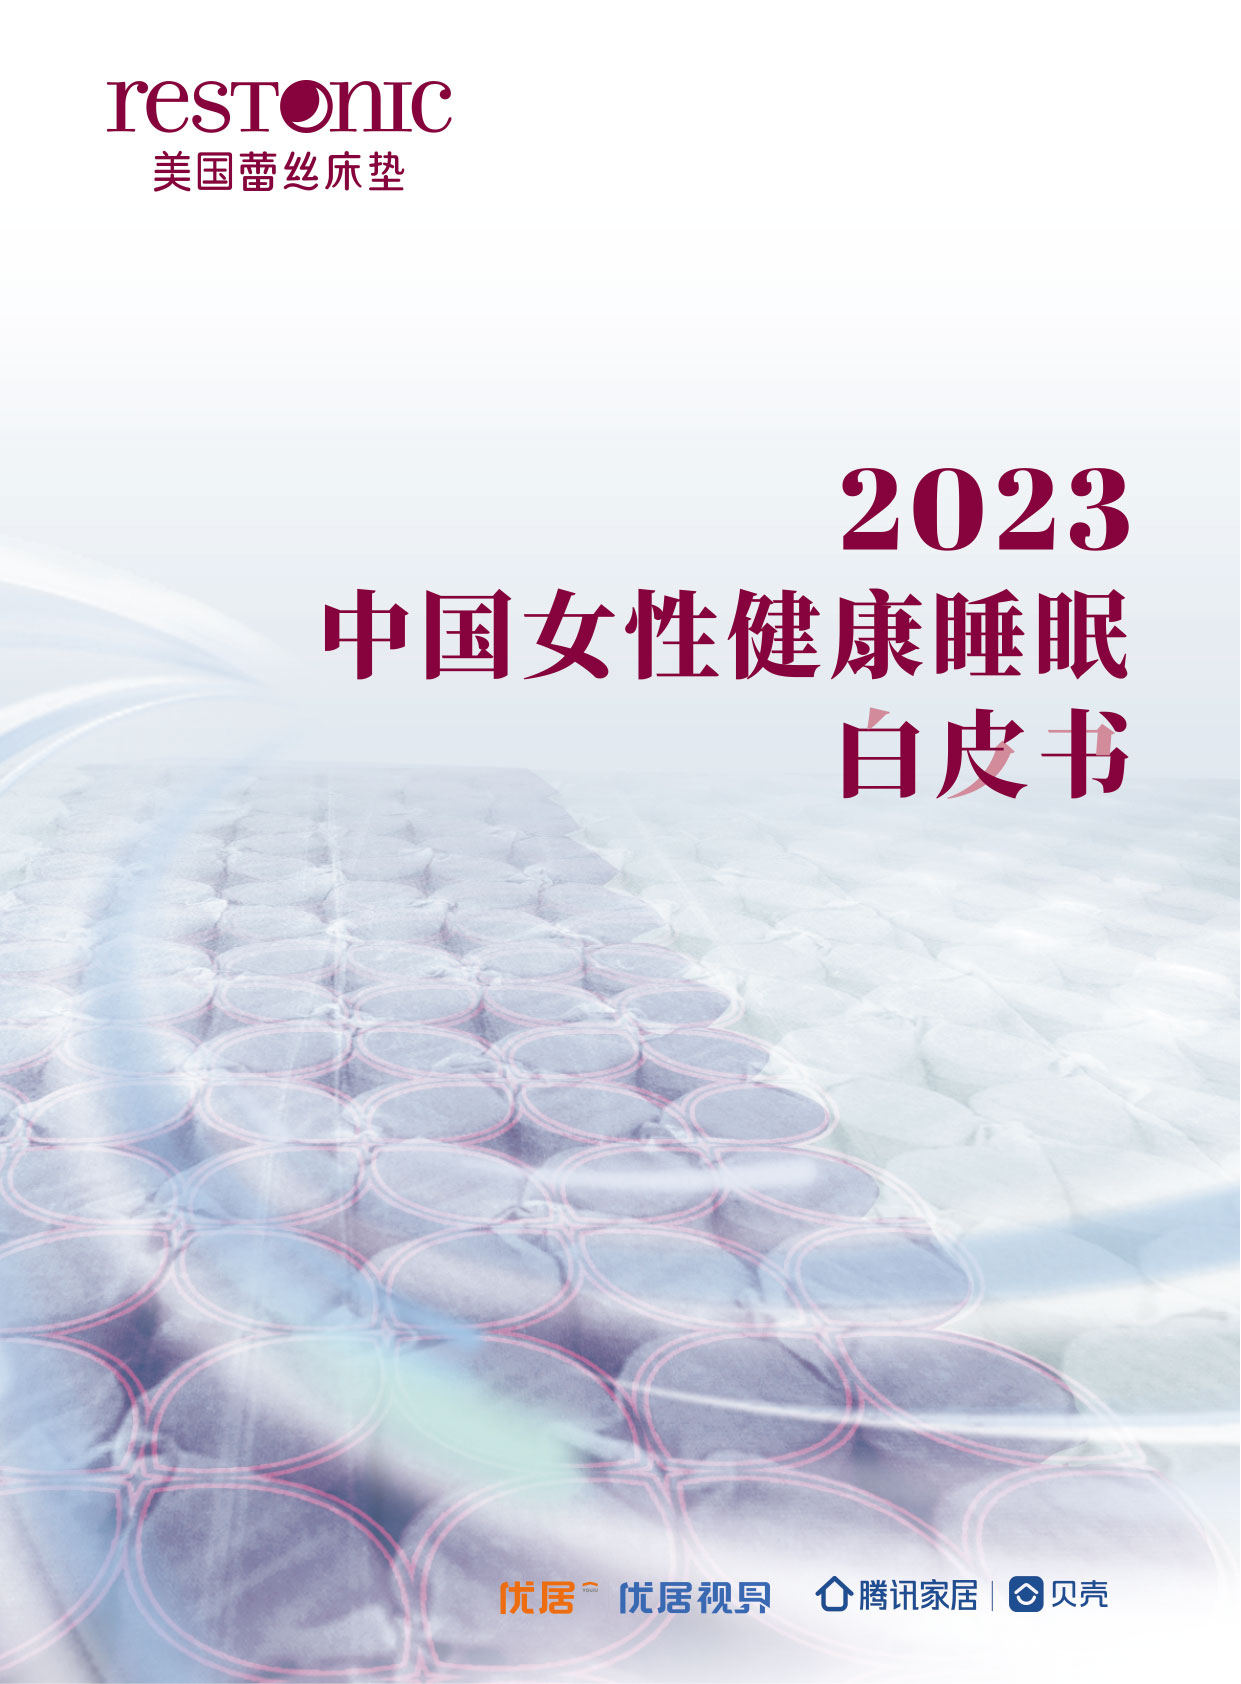 Restonic蕾丝床垫正式发布《2023中国女性健康睡眠白皮书》